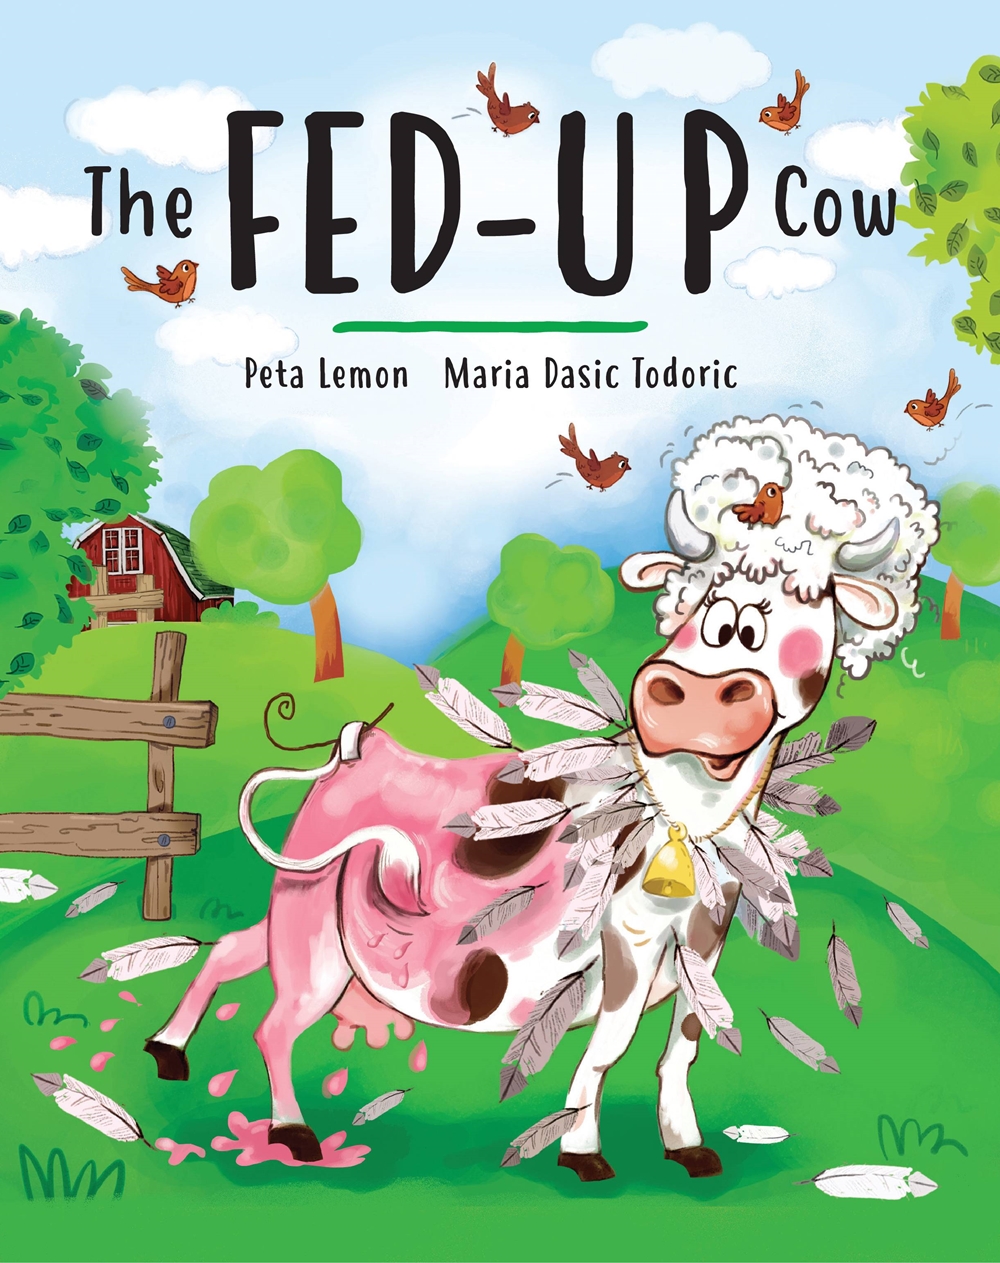 The Fed-up Cow by Peta Lemon